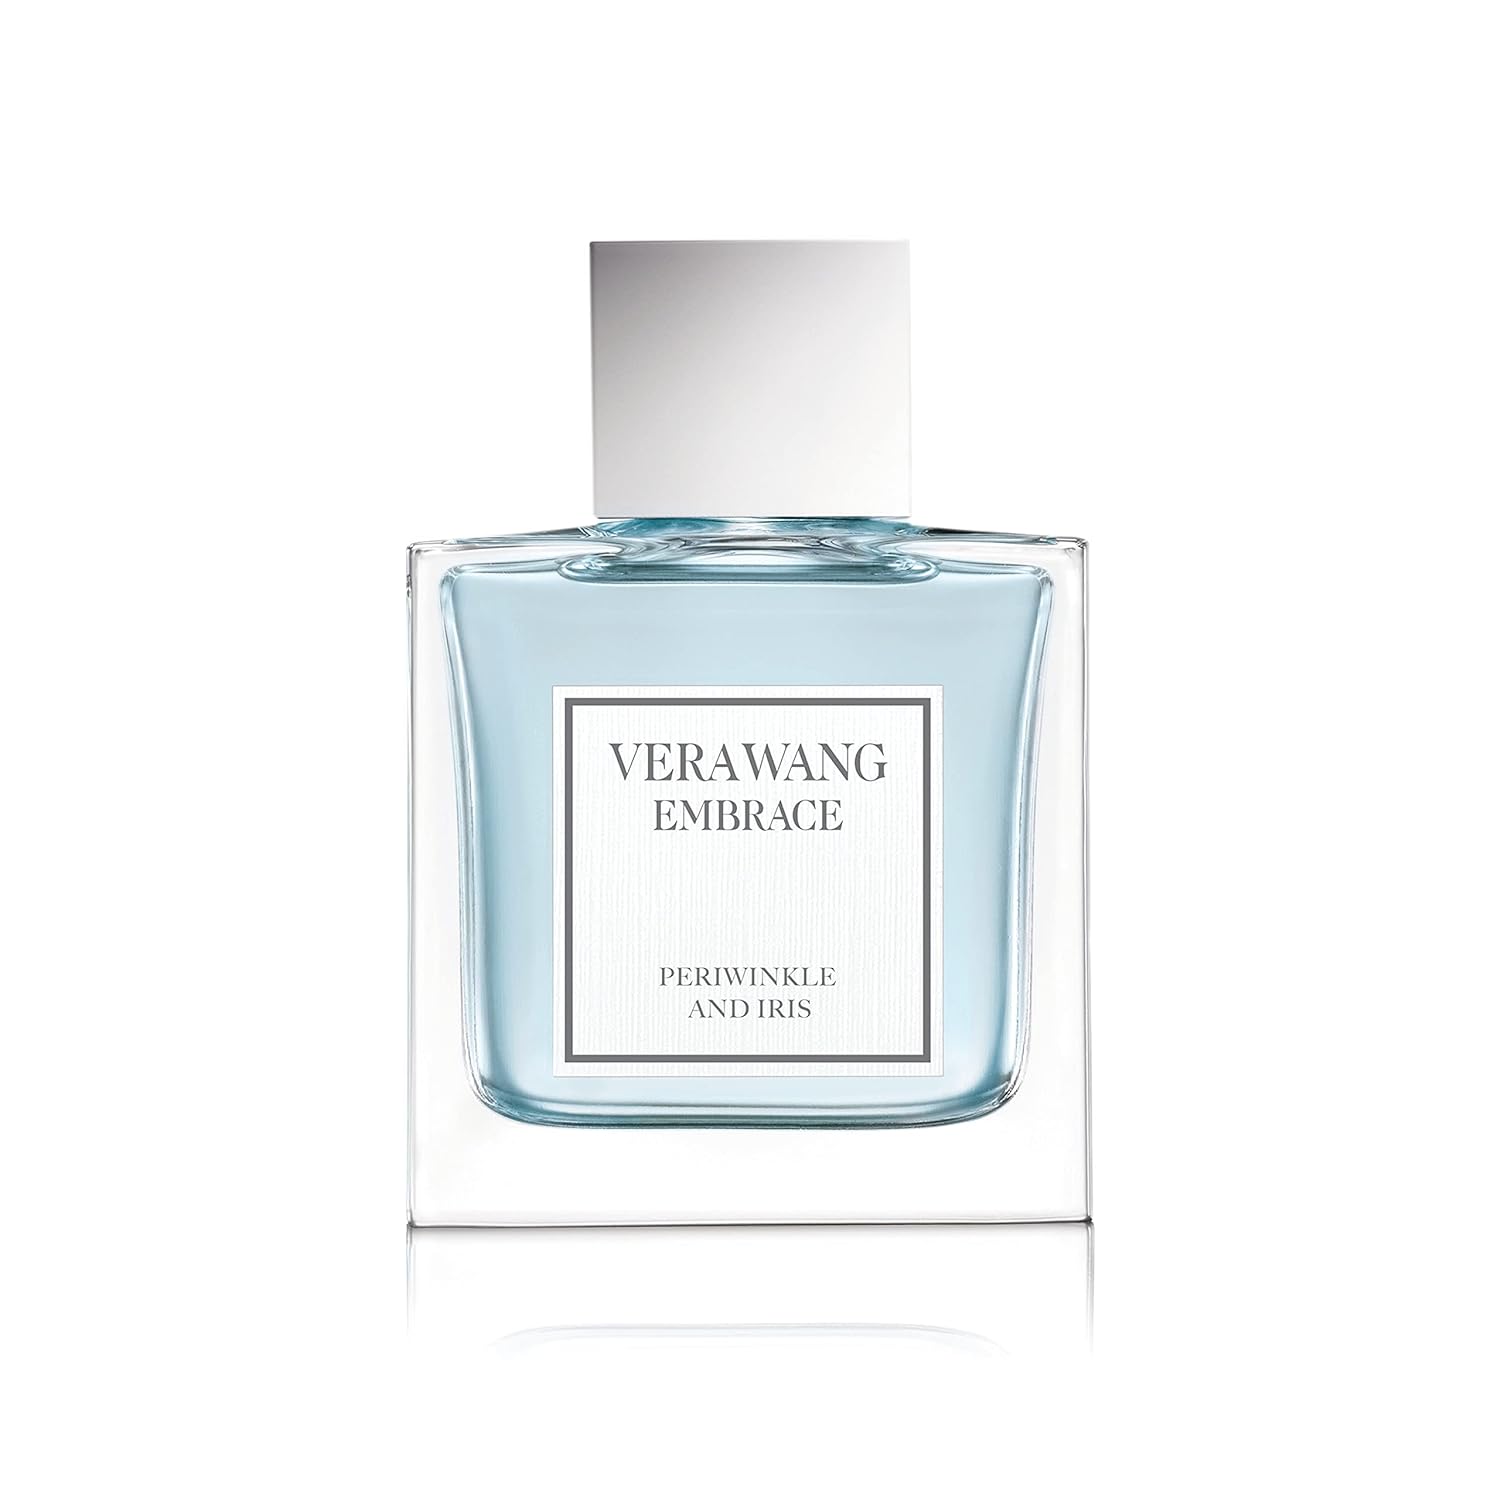 Vera Wang Embrace Periwinkle & Iris Vera Wang perfume